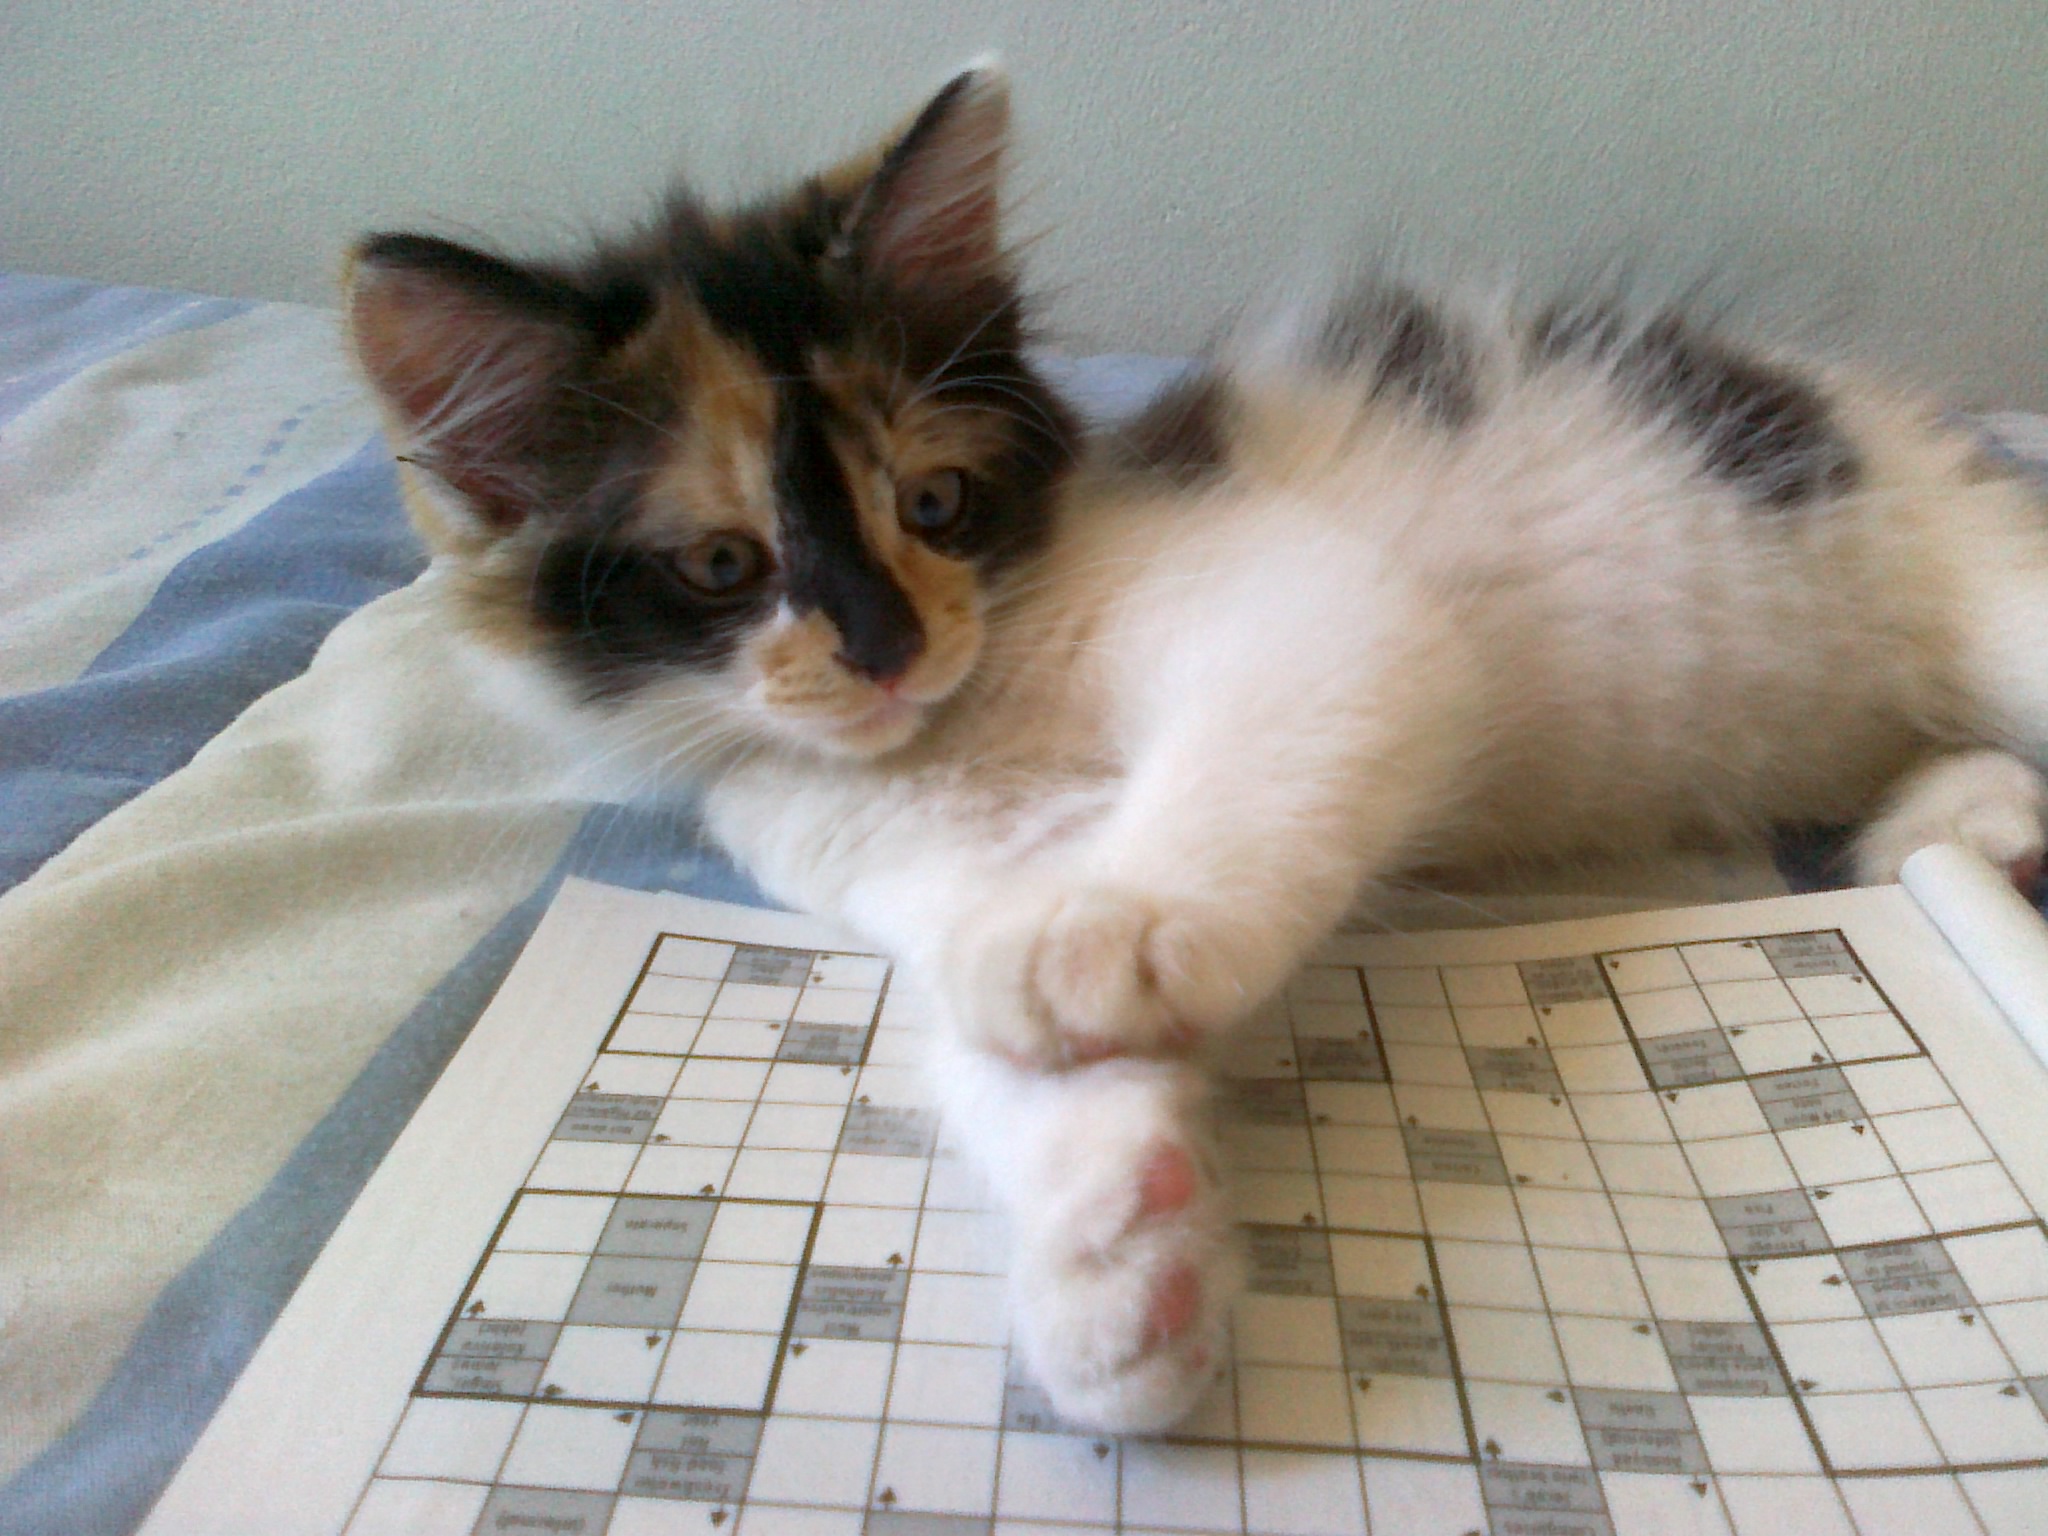 cat doing crosswords